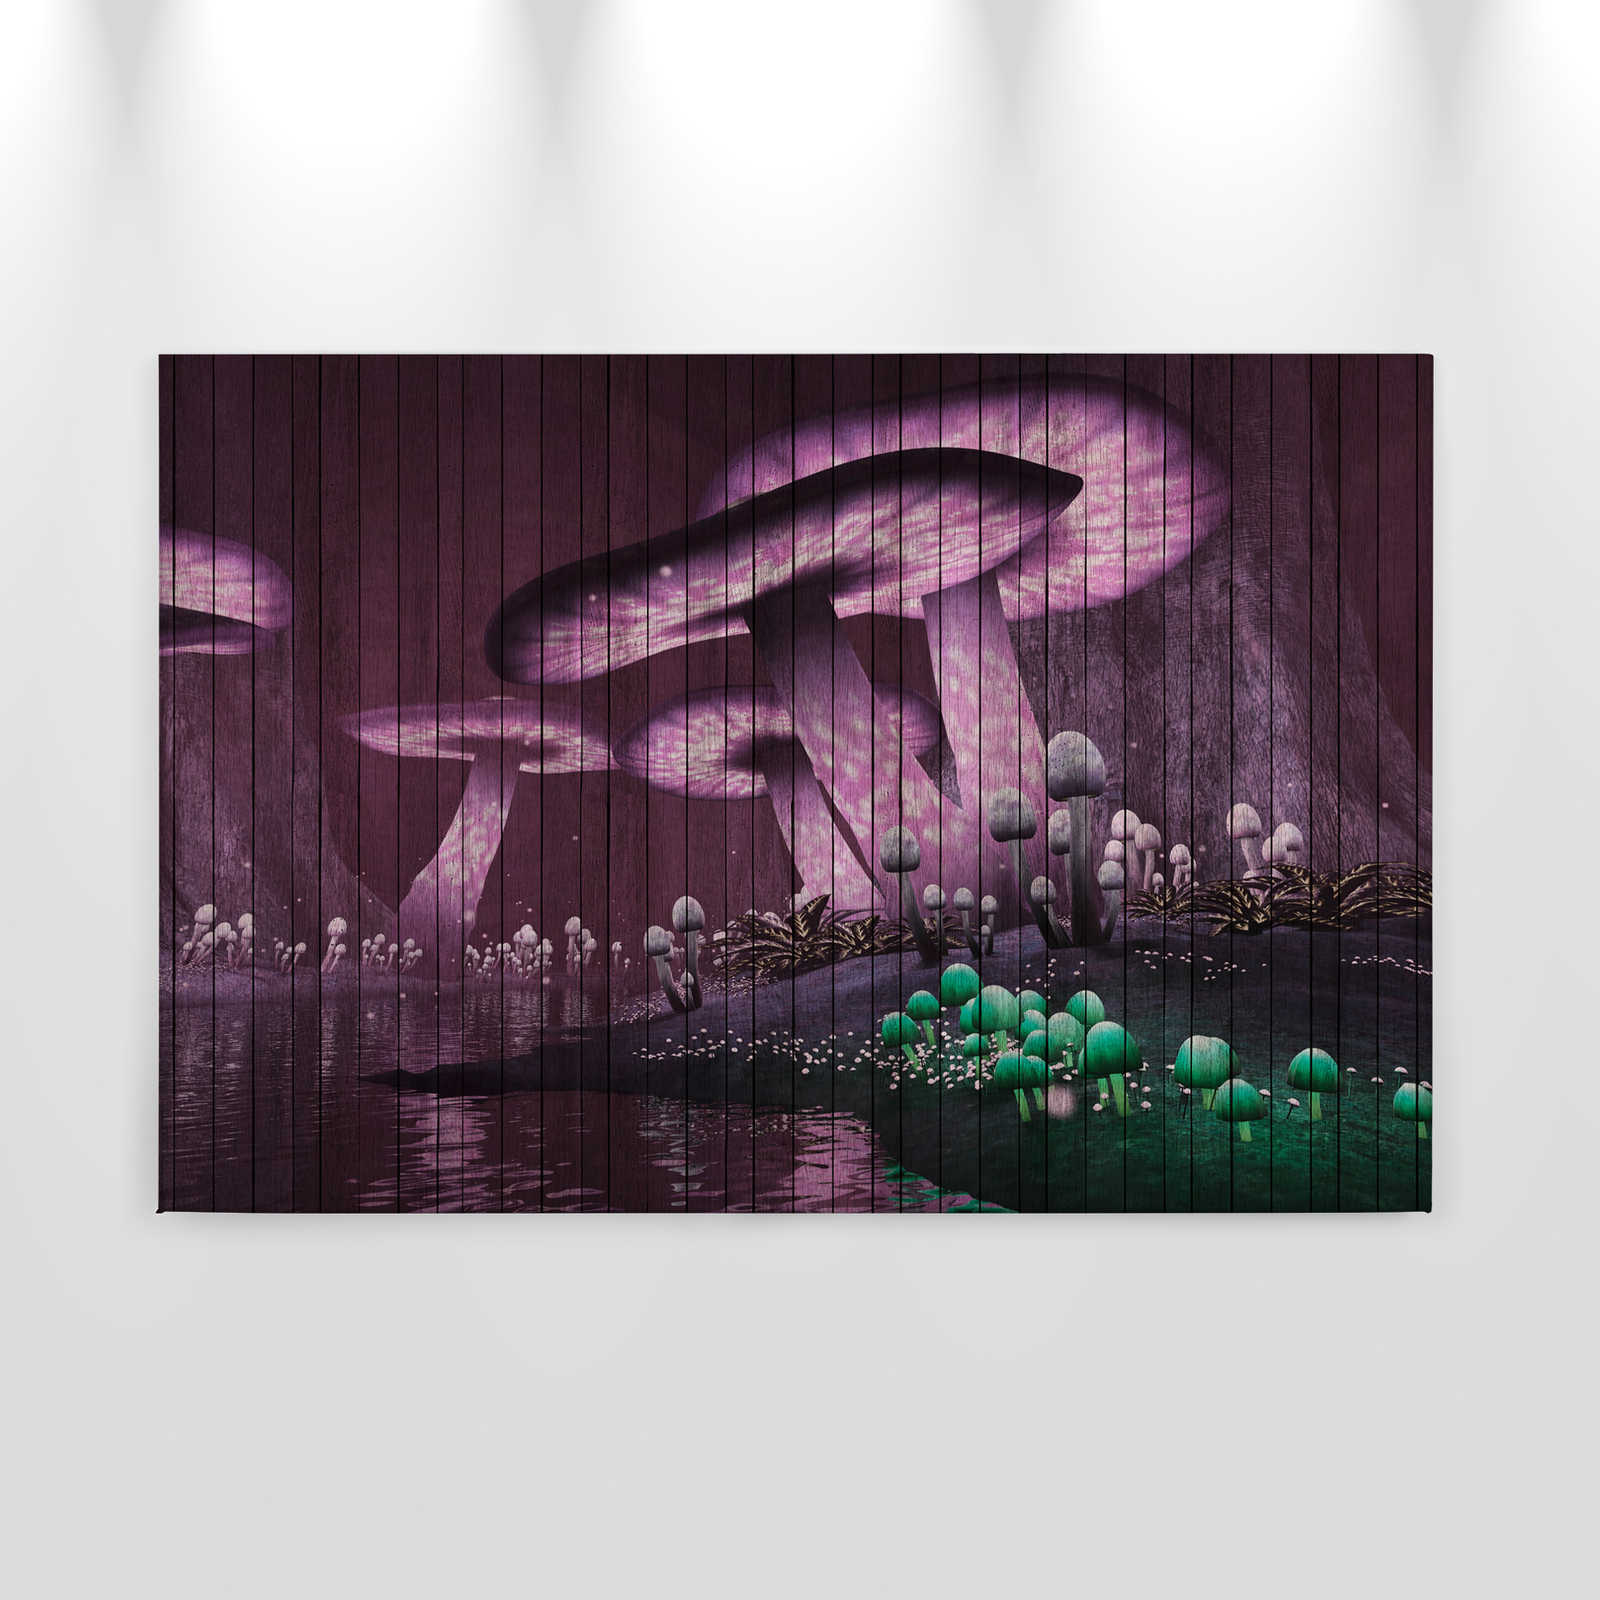             Fantasia 2 - Quadro su tela foresta magica con struttura in pannelli di legno - 0,90 m x 0,60 m
        